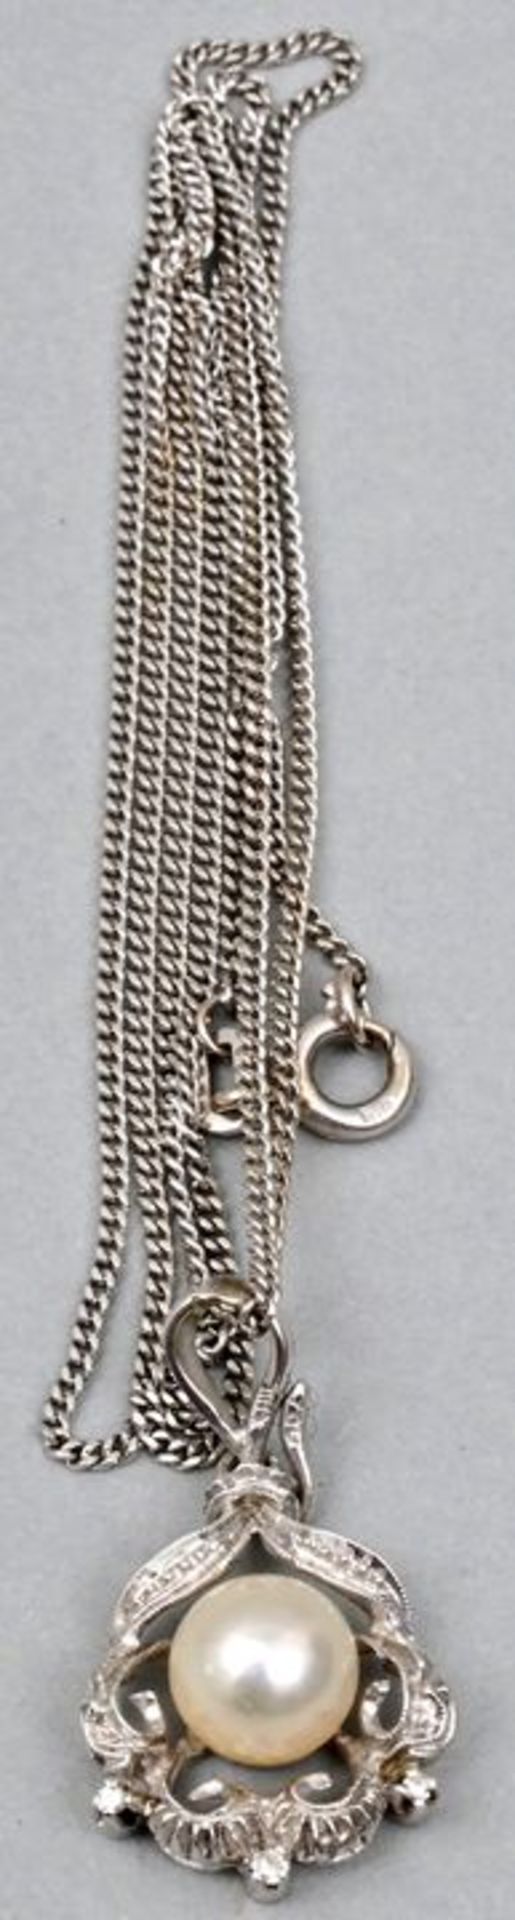 Halskette mit Perlenanhänger, WG / necklace with pearl